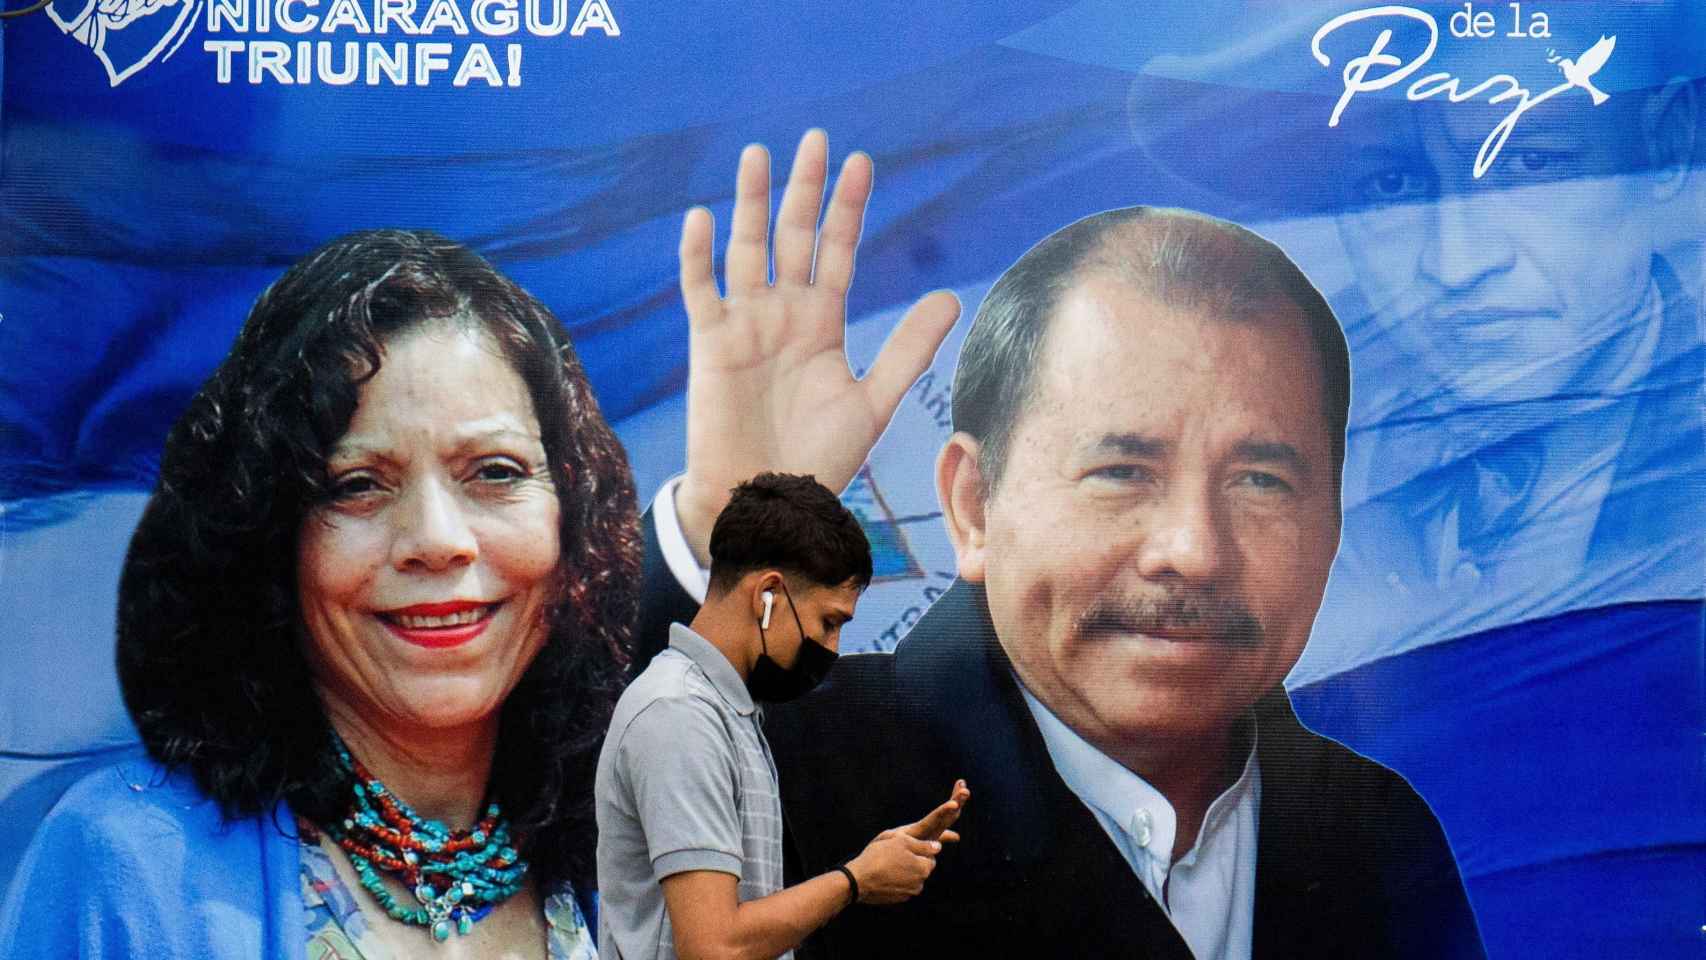 Cartel electoral de los Murillo - Ortega para las próximas elecciones.